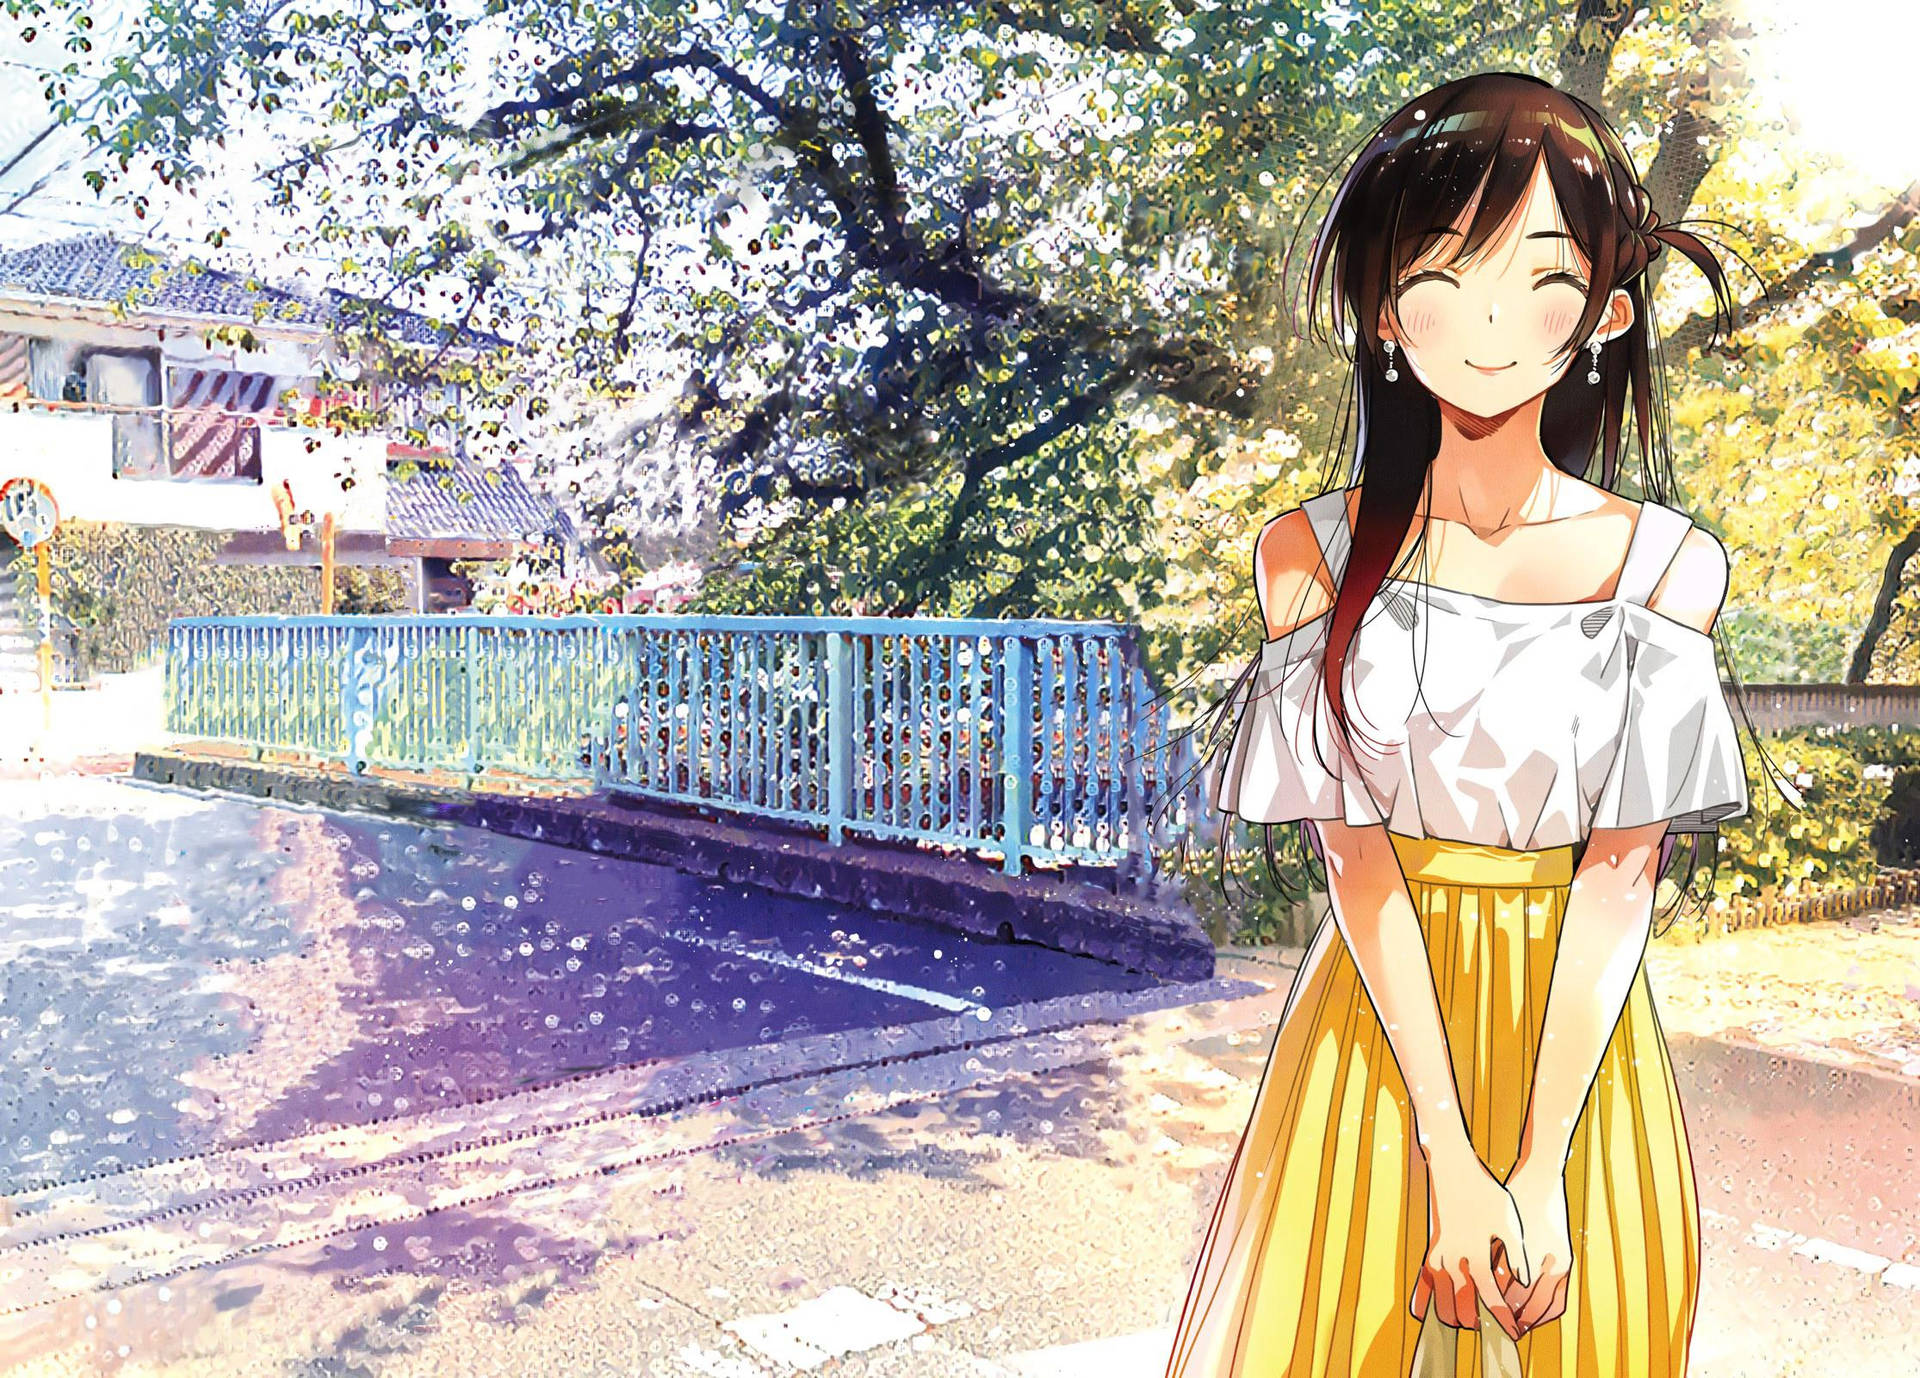 Rent A Girlfriend Chizuru Spring Date